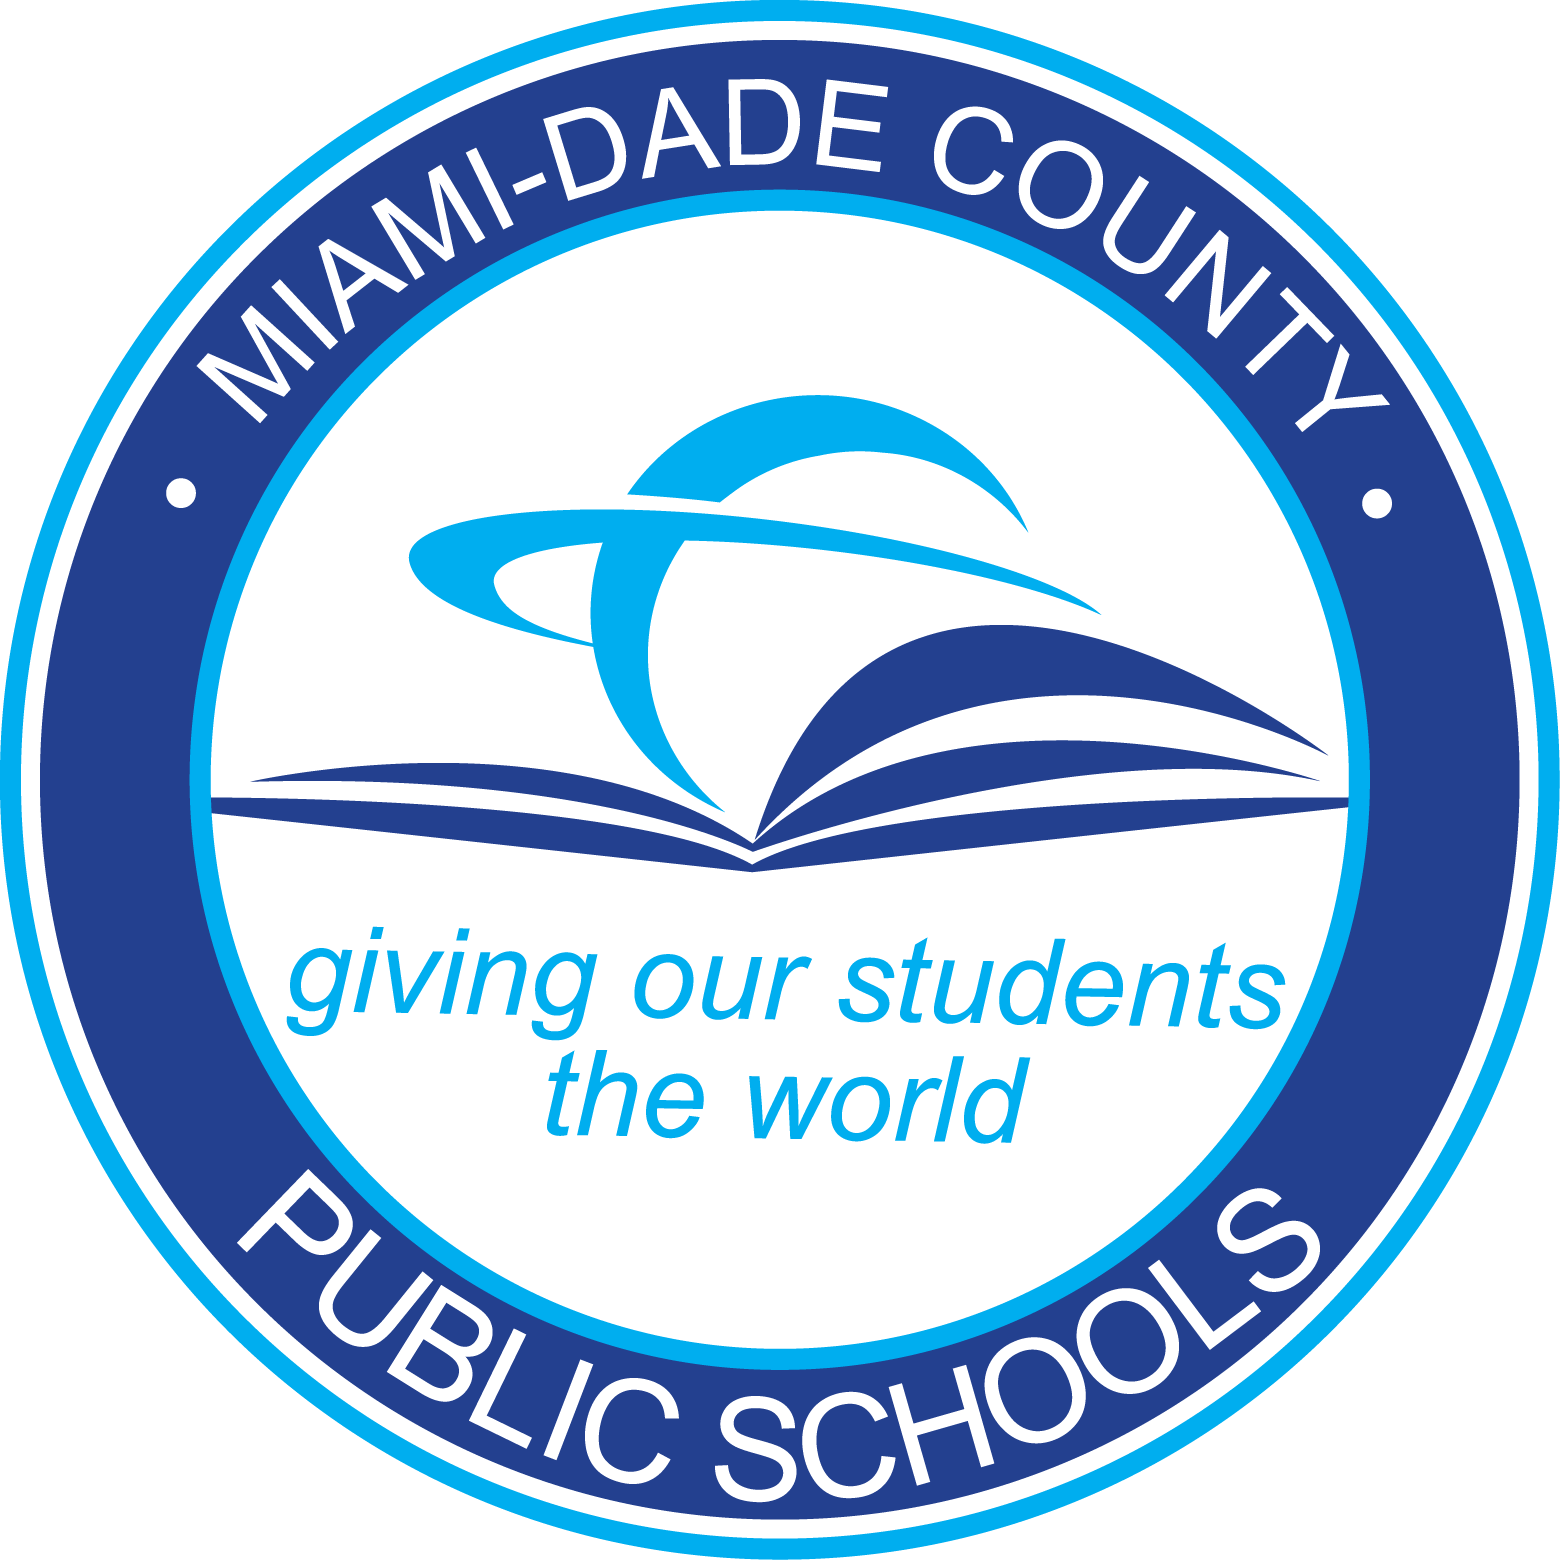 DCPS Logo - Miami-Dade County Public Schools